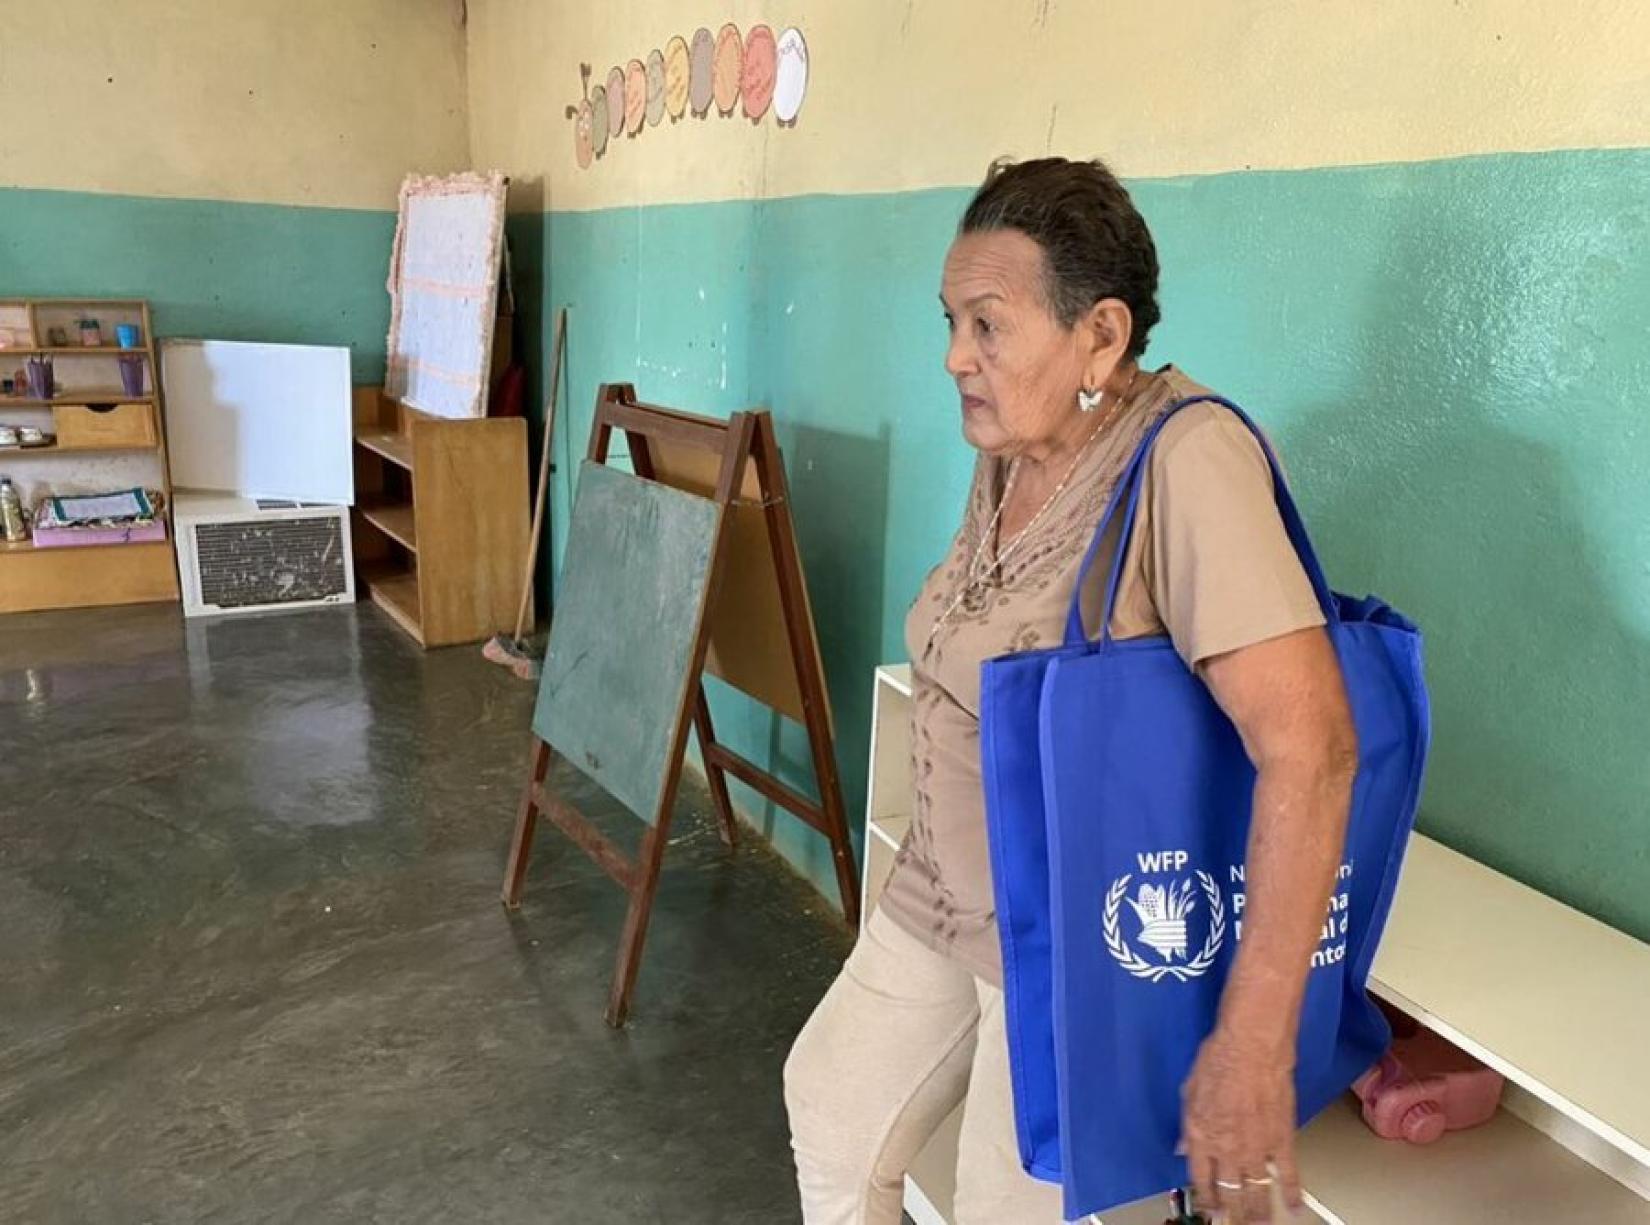 Ana, de 73 años, fue a recoger la ración escolar para llevar a casa de su bisnieto de 3 años